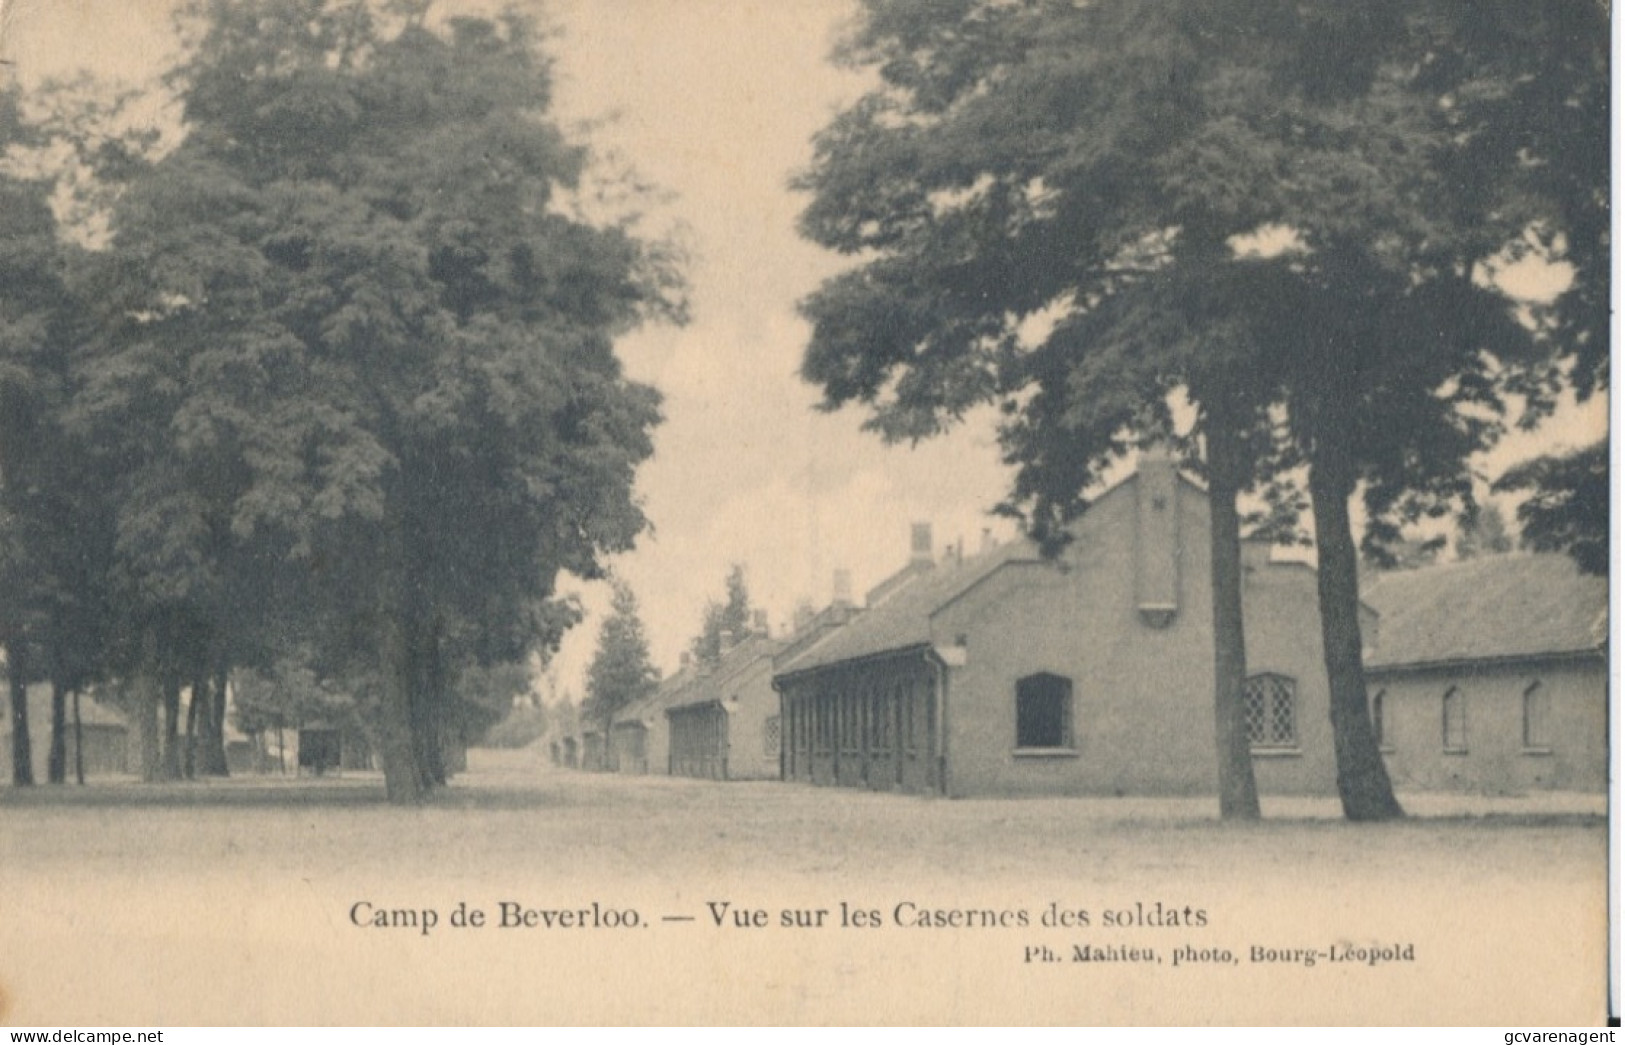 CAMP DE BEVERLOO.  VUE SUR LES CASERNES DES SOLDATS   ZIE AFBEELDINGEN - Leopoldsburg (Beverloo Camp)